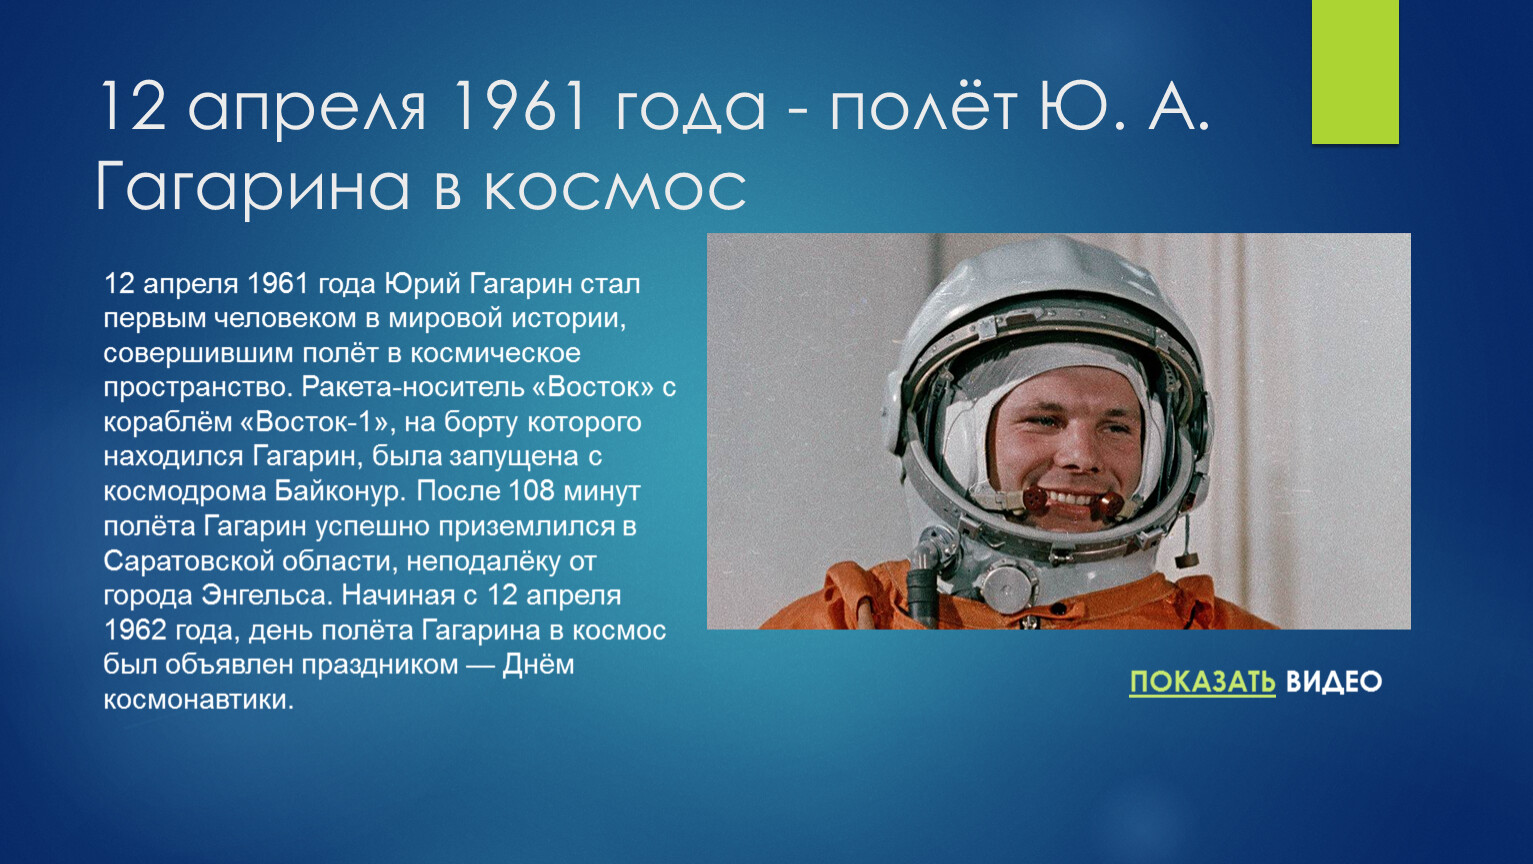 Сообщение о первом полете в космос. Первый полет человека в космос (ю. а. Гагарин). 1961 Полет ю.а Гагарина в космос. Гагарин 12 апреля 1961 года.